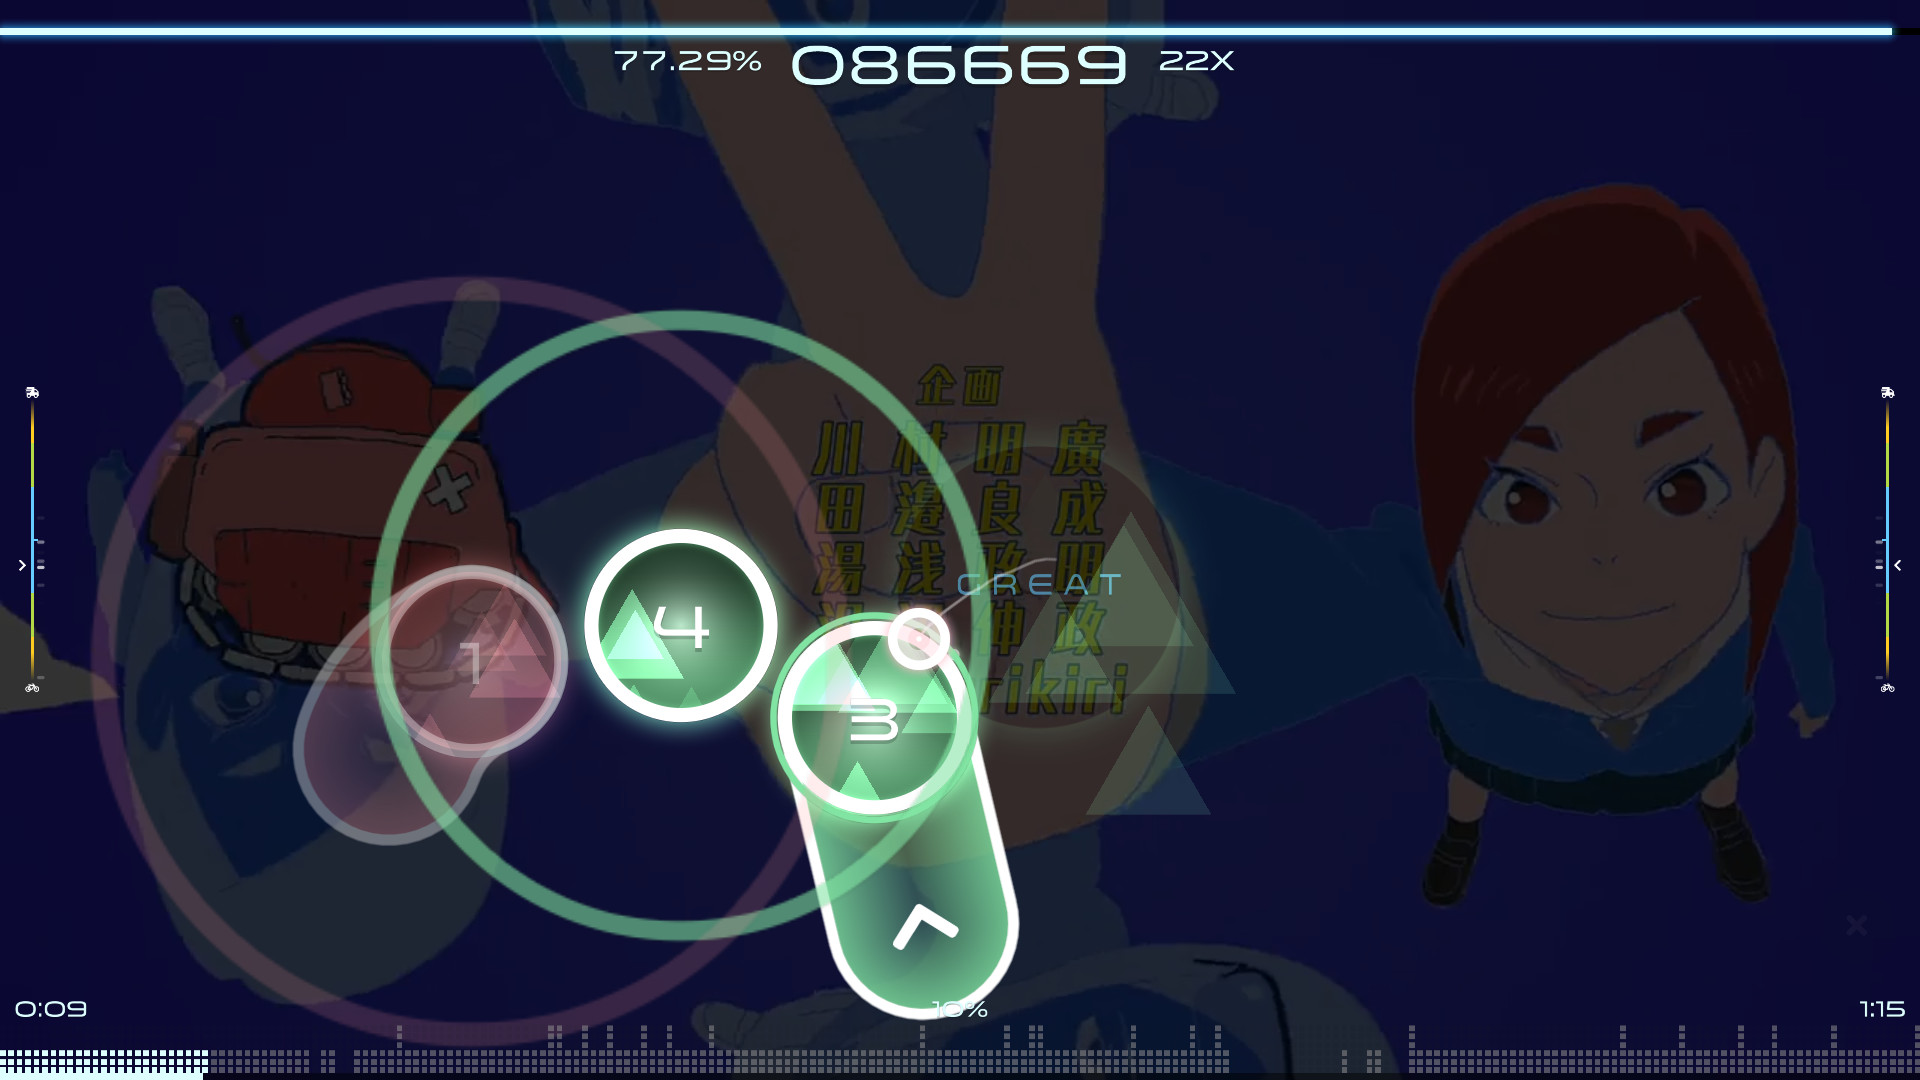 Osu! is a free-to-play online rhythm game.